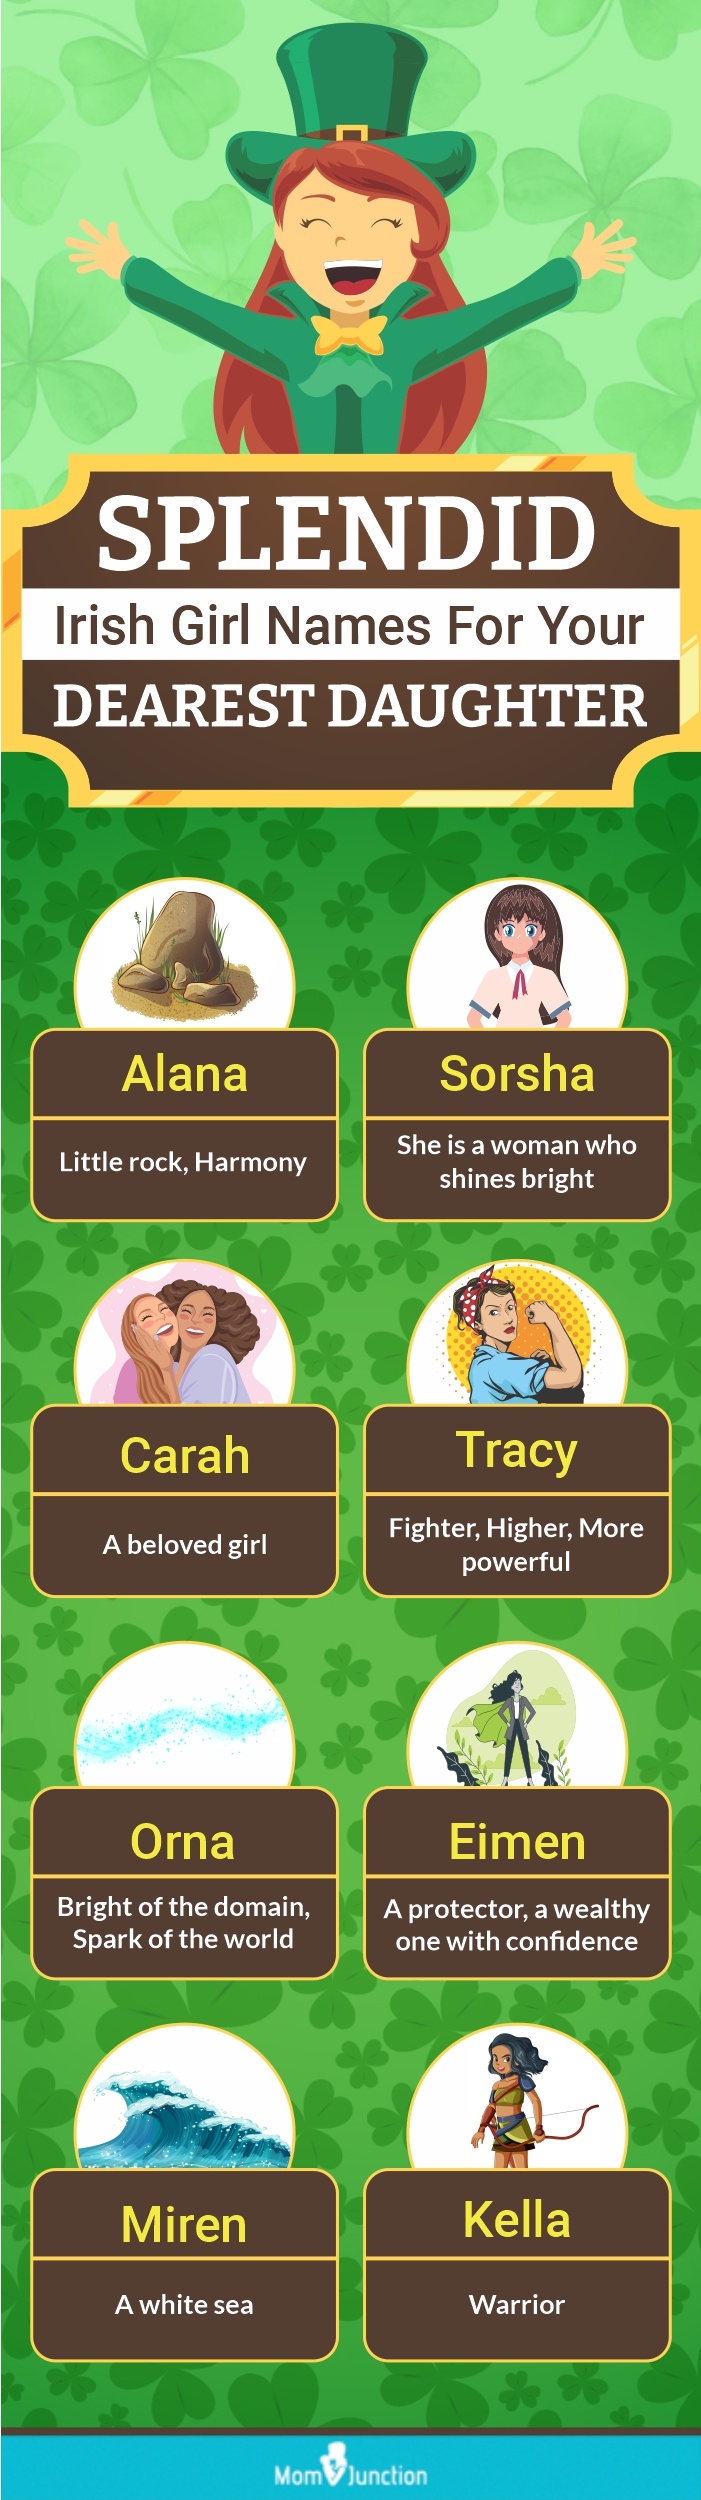 splendid irish girl names for your dearest daughter (infographic)